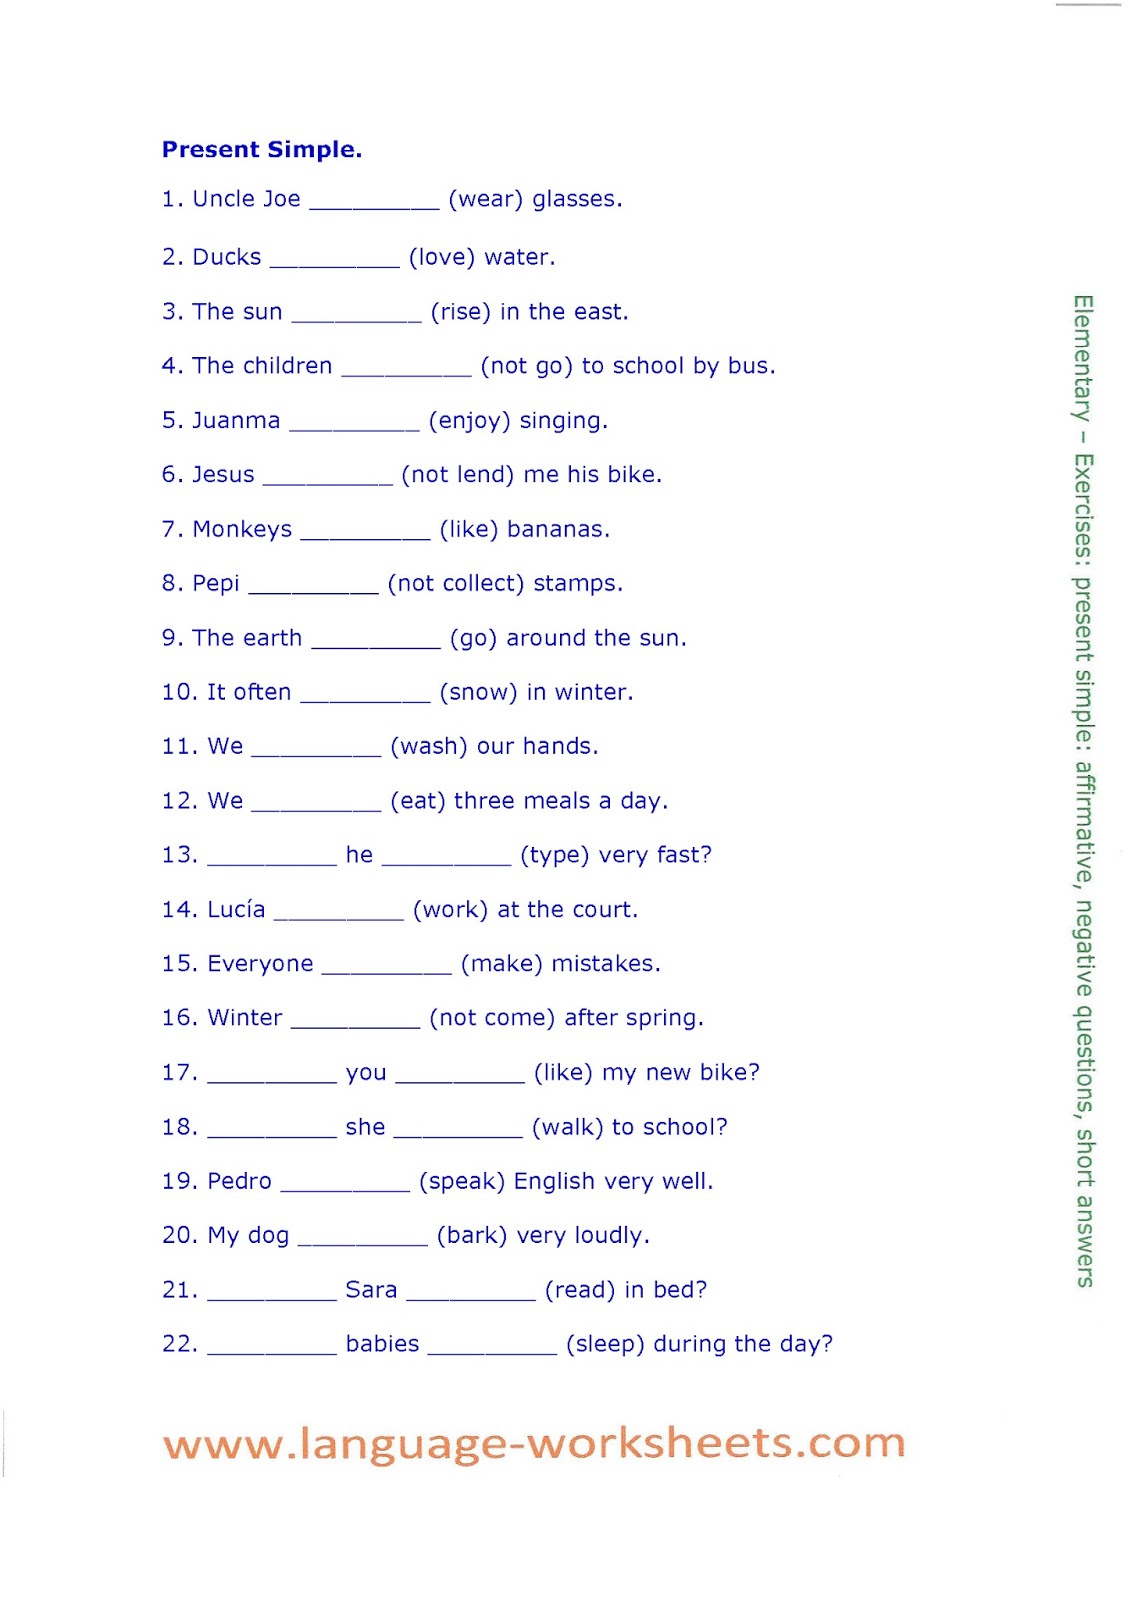 Elementary упражнения. Упражнения на презент Симпл Worksheet. Present simple exercises. Present simple exercises for Kids Worksheets. Present simple exercises for Kids Elementary.